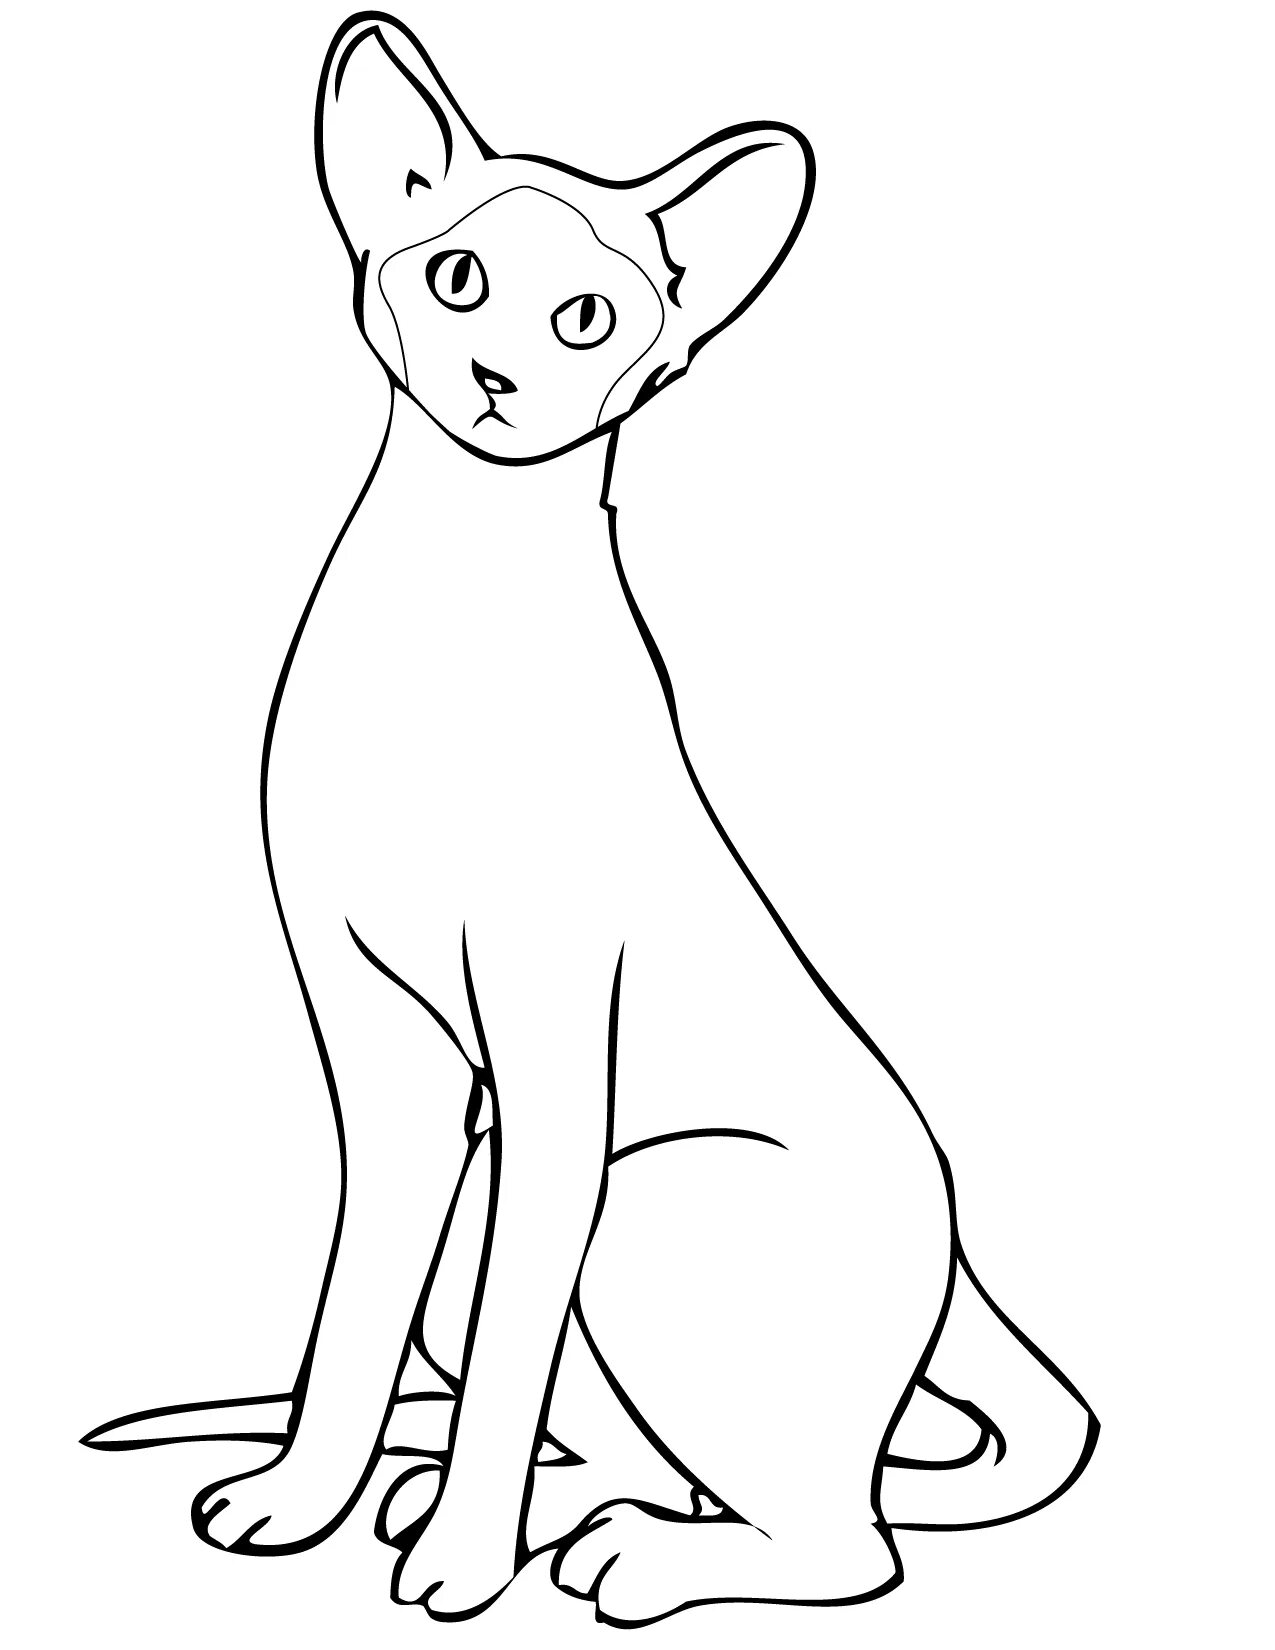 Siamese cat #1